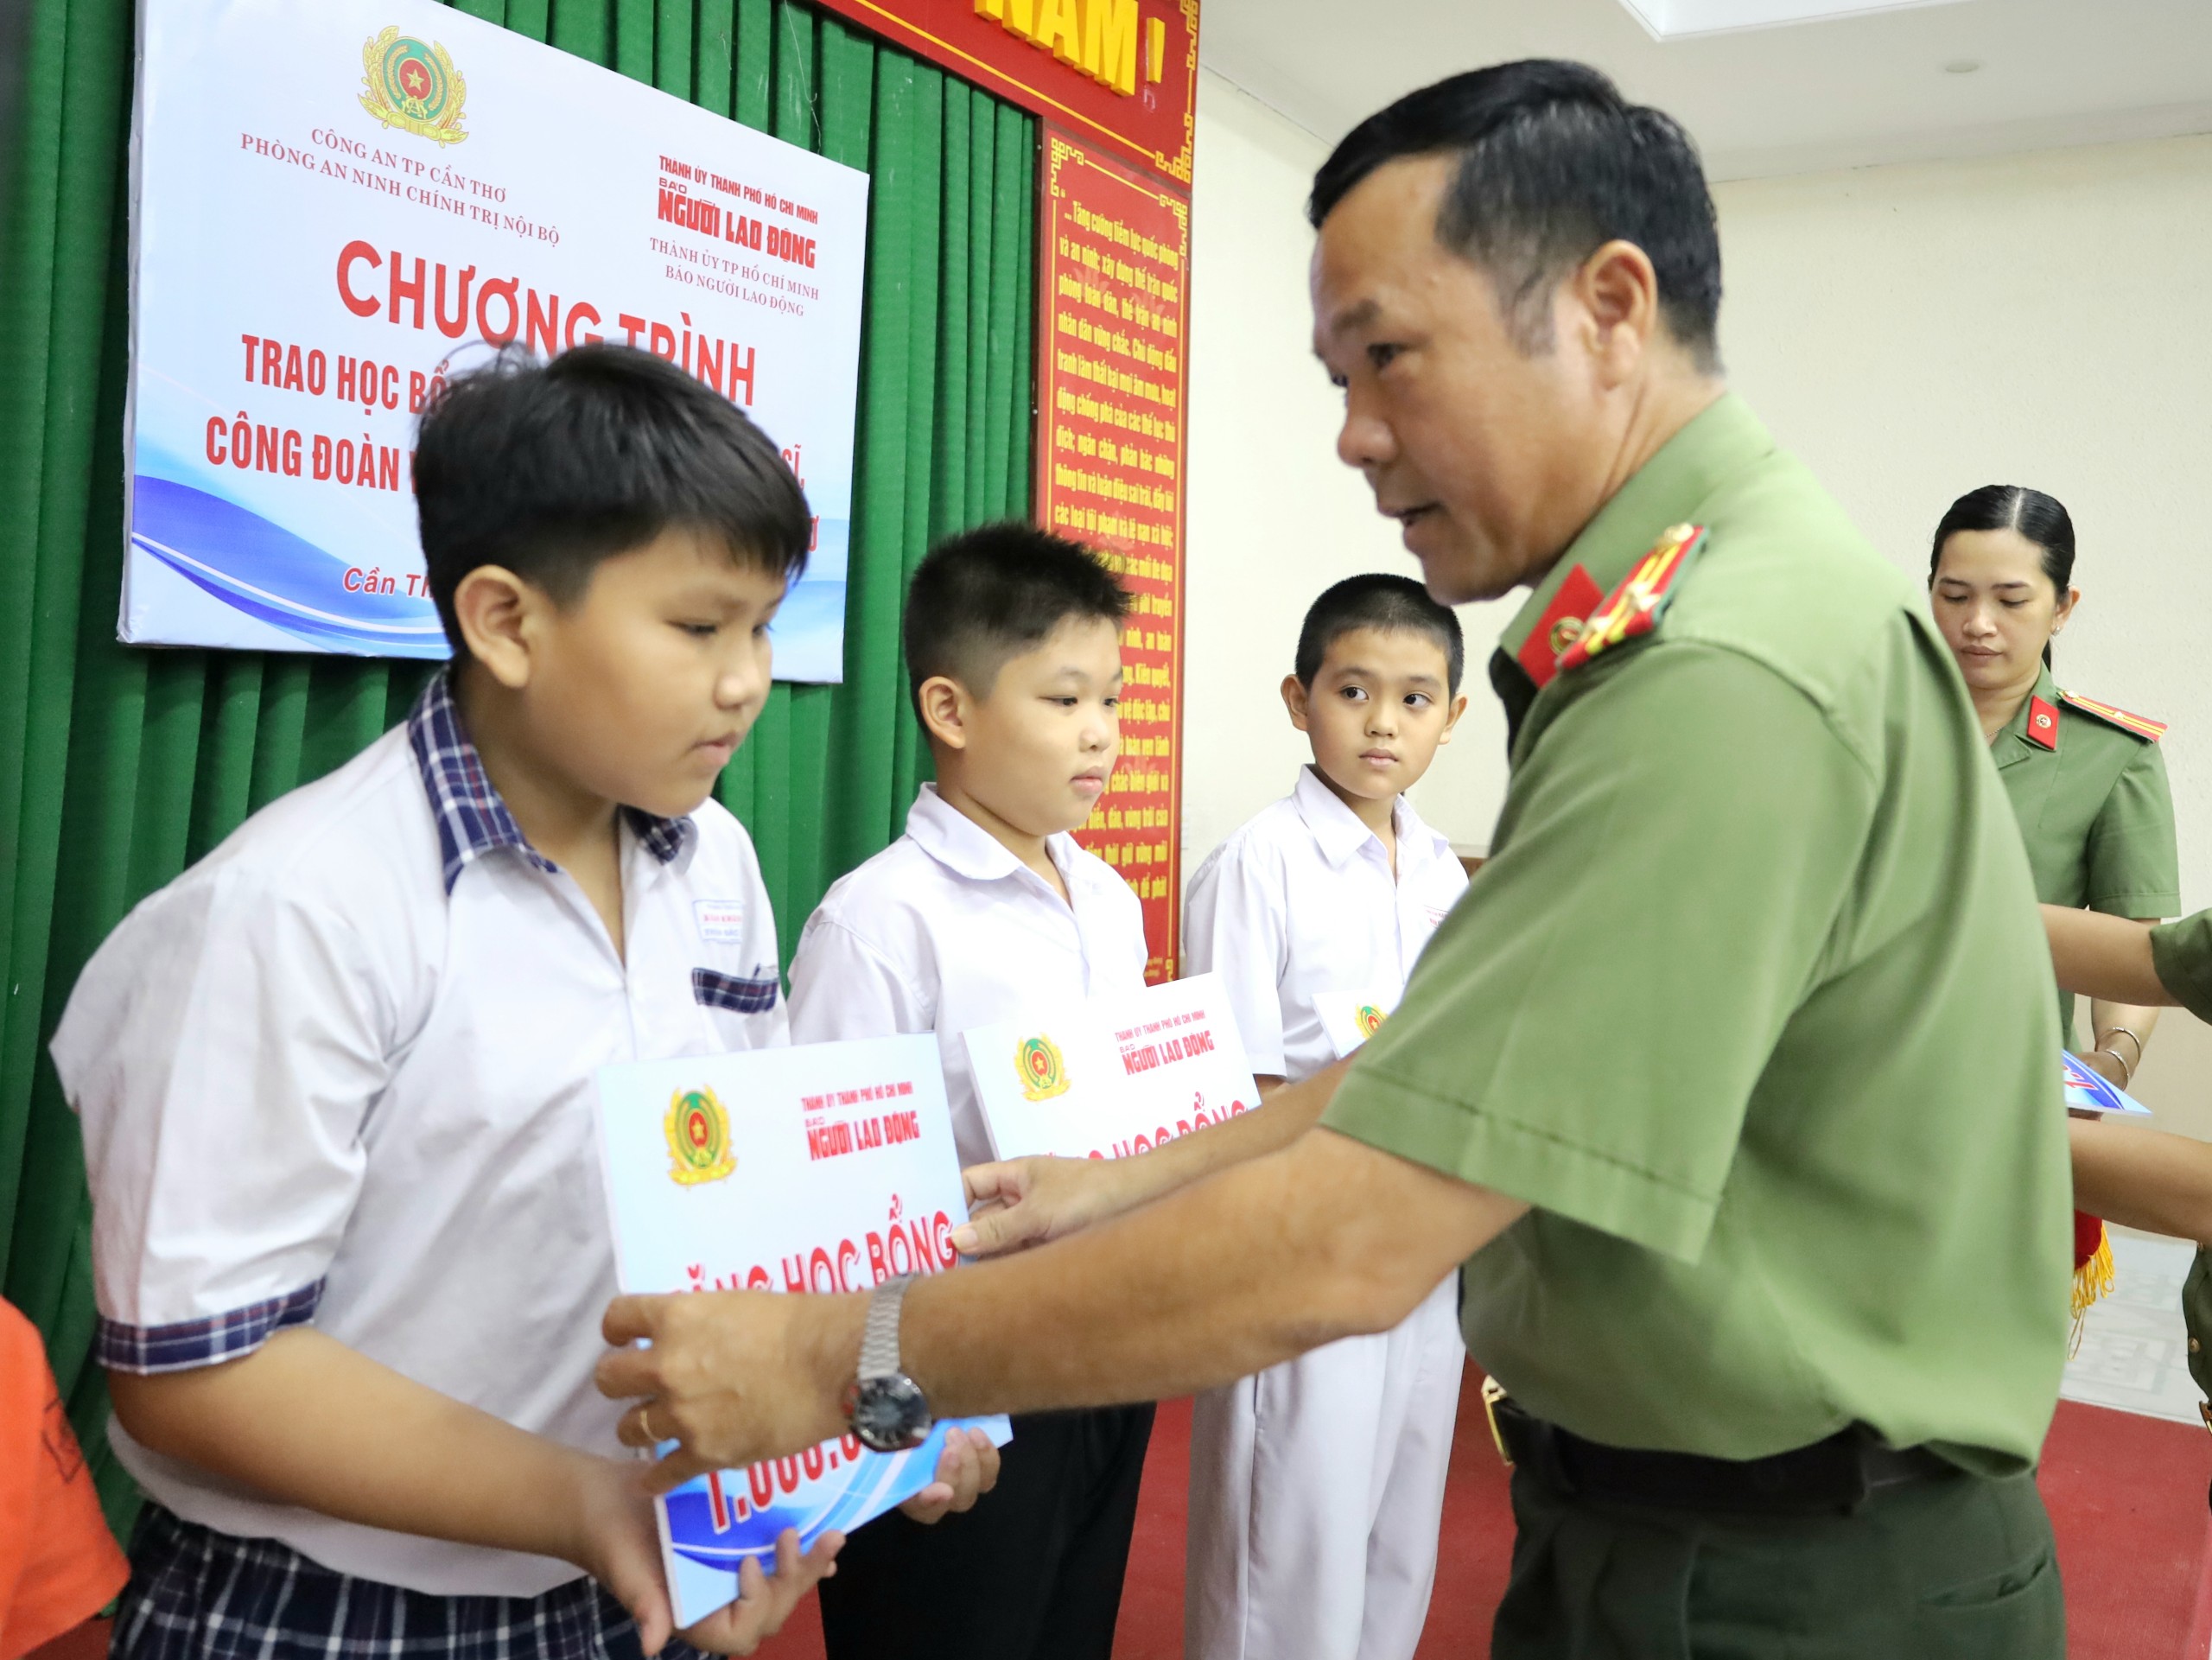 Thượng tá Nguyễn Hoàng Phúc - Trưởng Phòng An ninh chính trị nội bộ, Công an TP. Cần Thơ trao tặng học bổng cho các em học sinh.